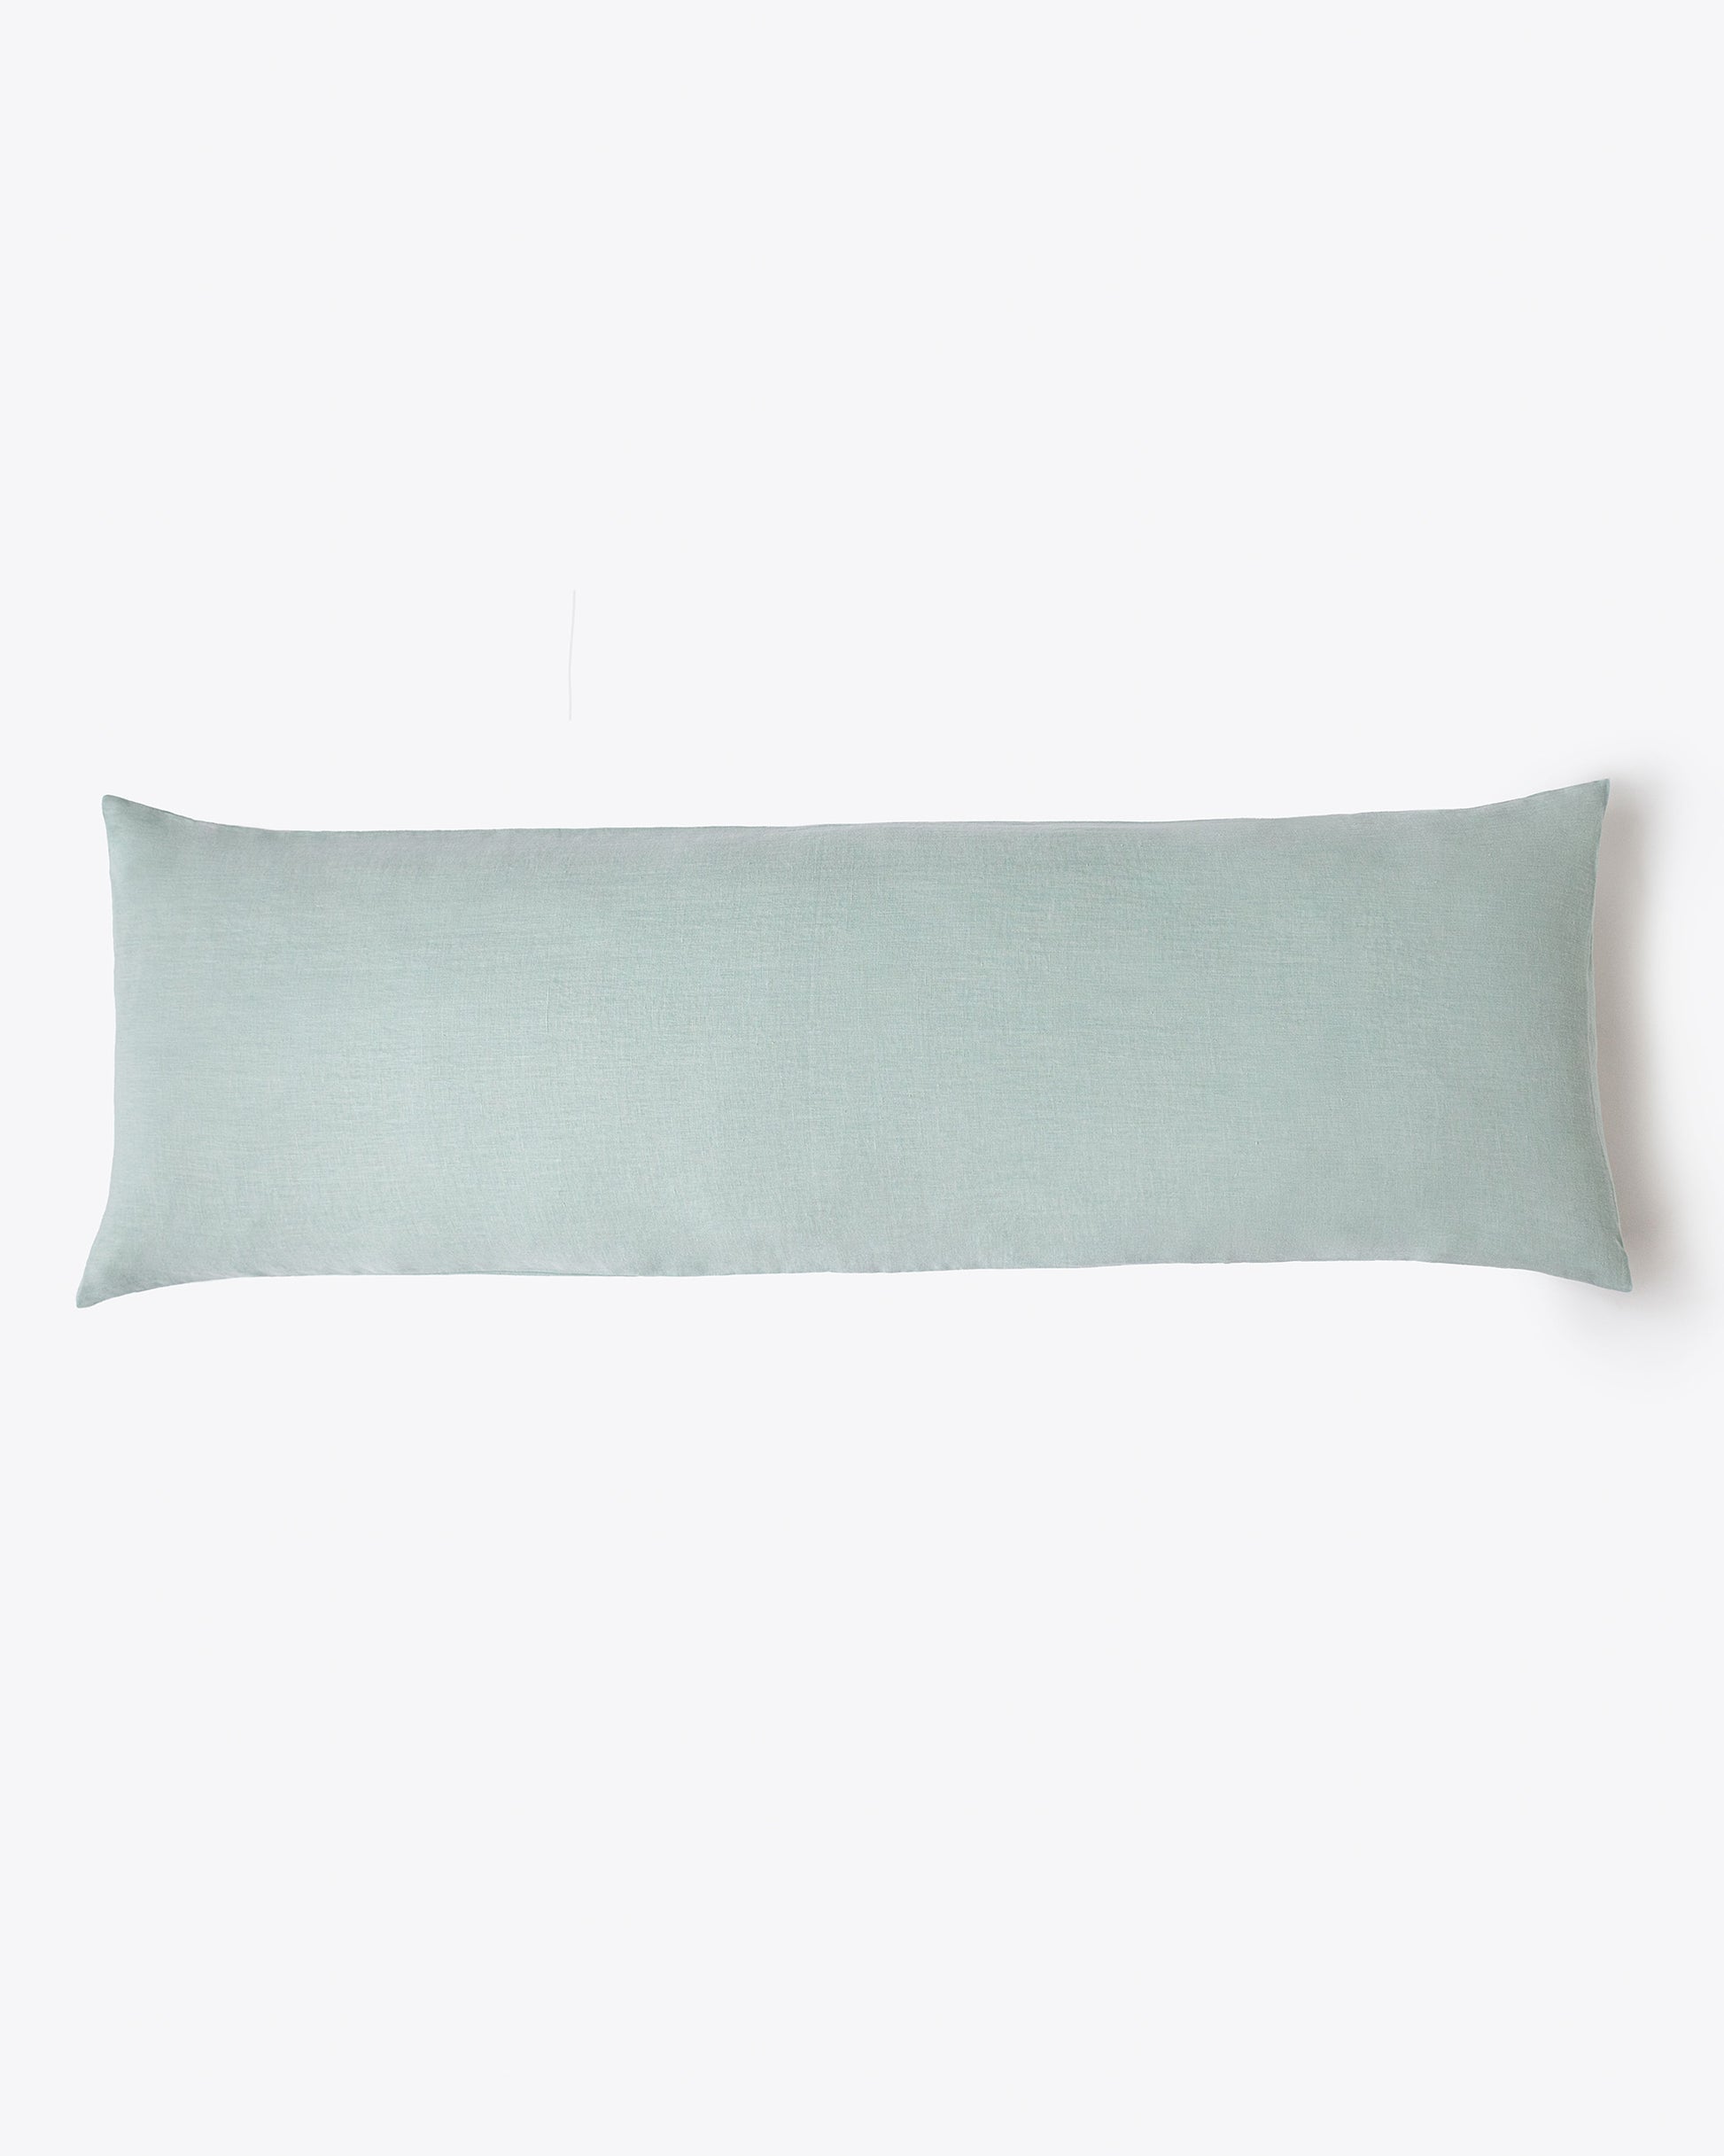 Body pillowcase in Dusty blue - MagicLinen